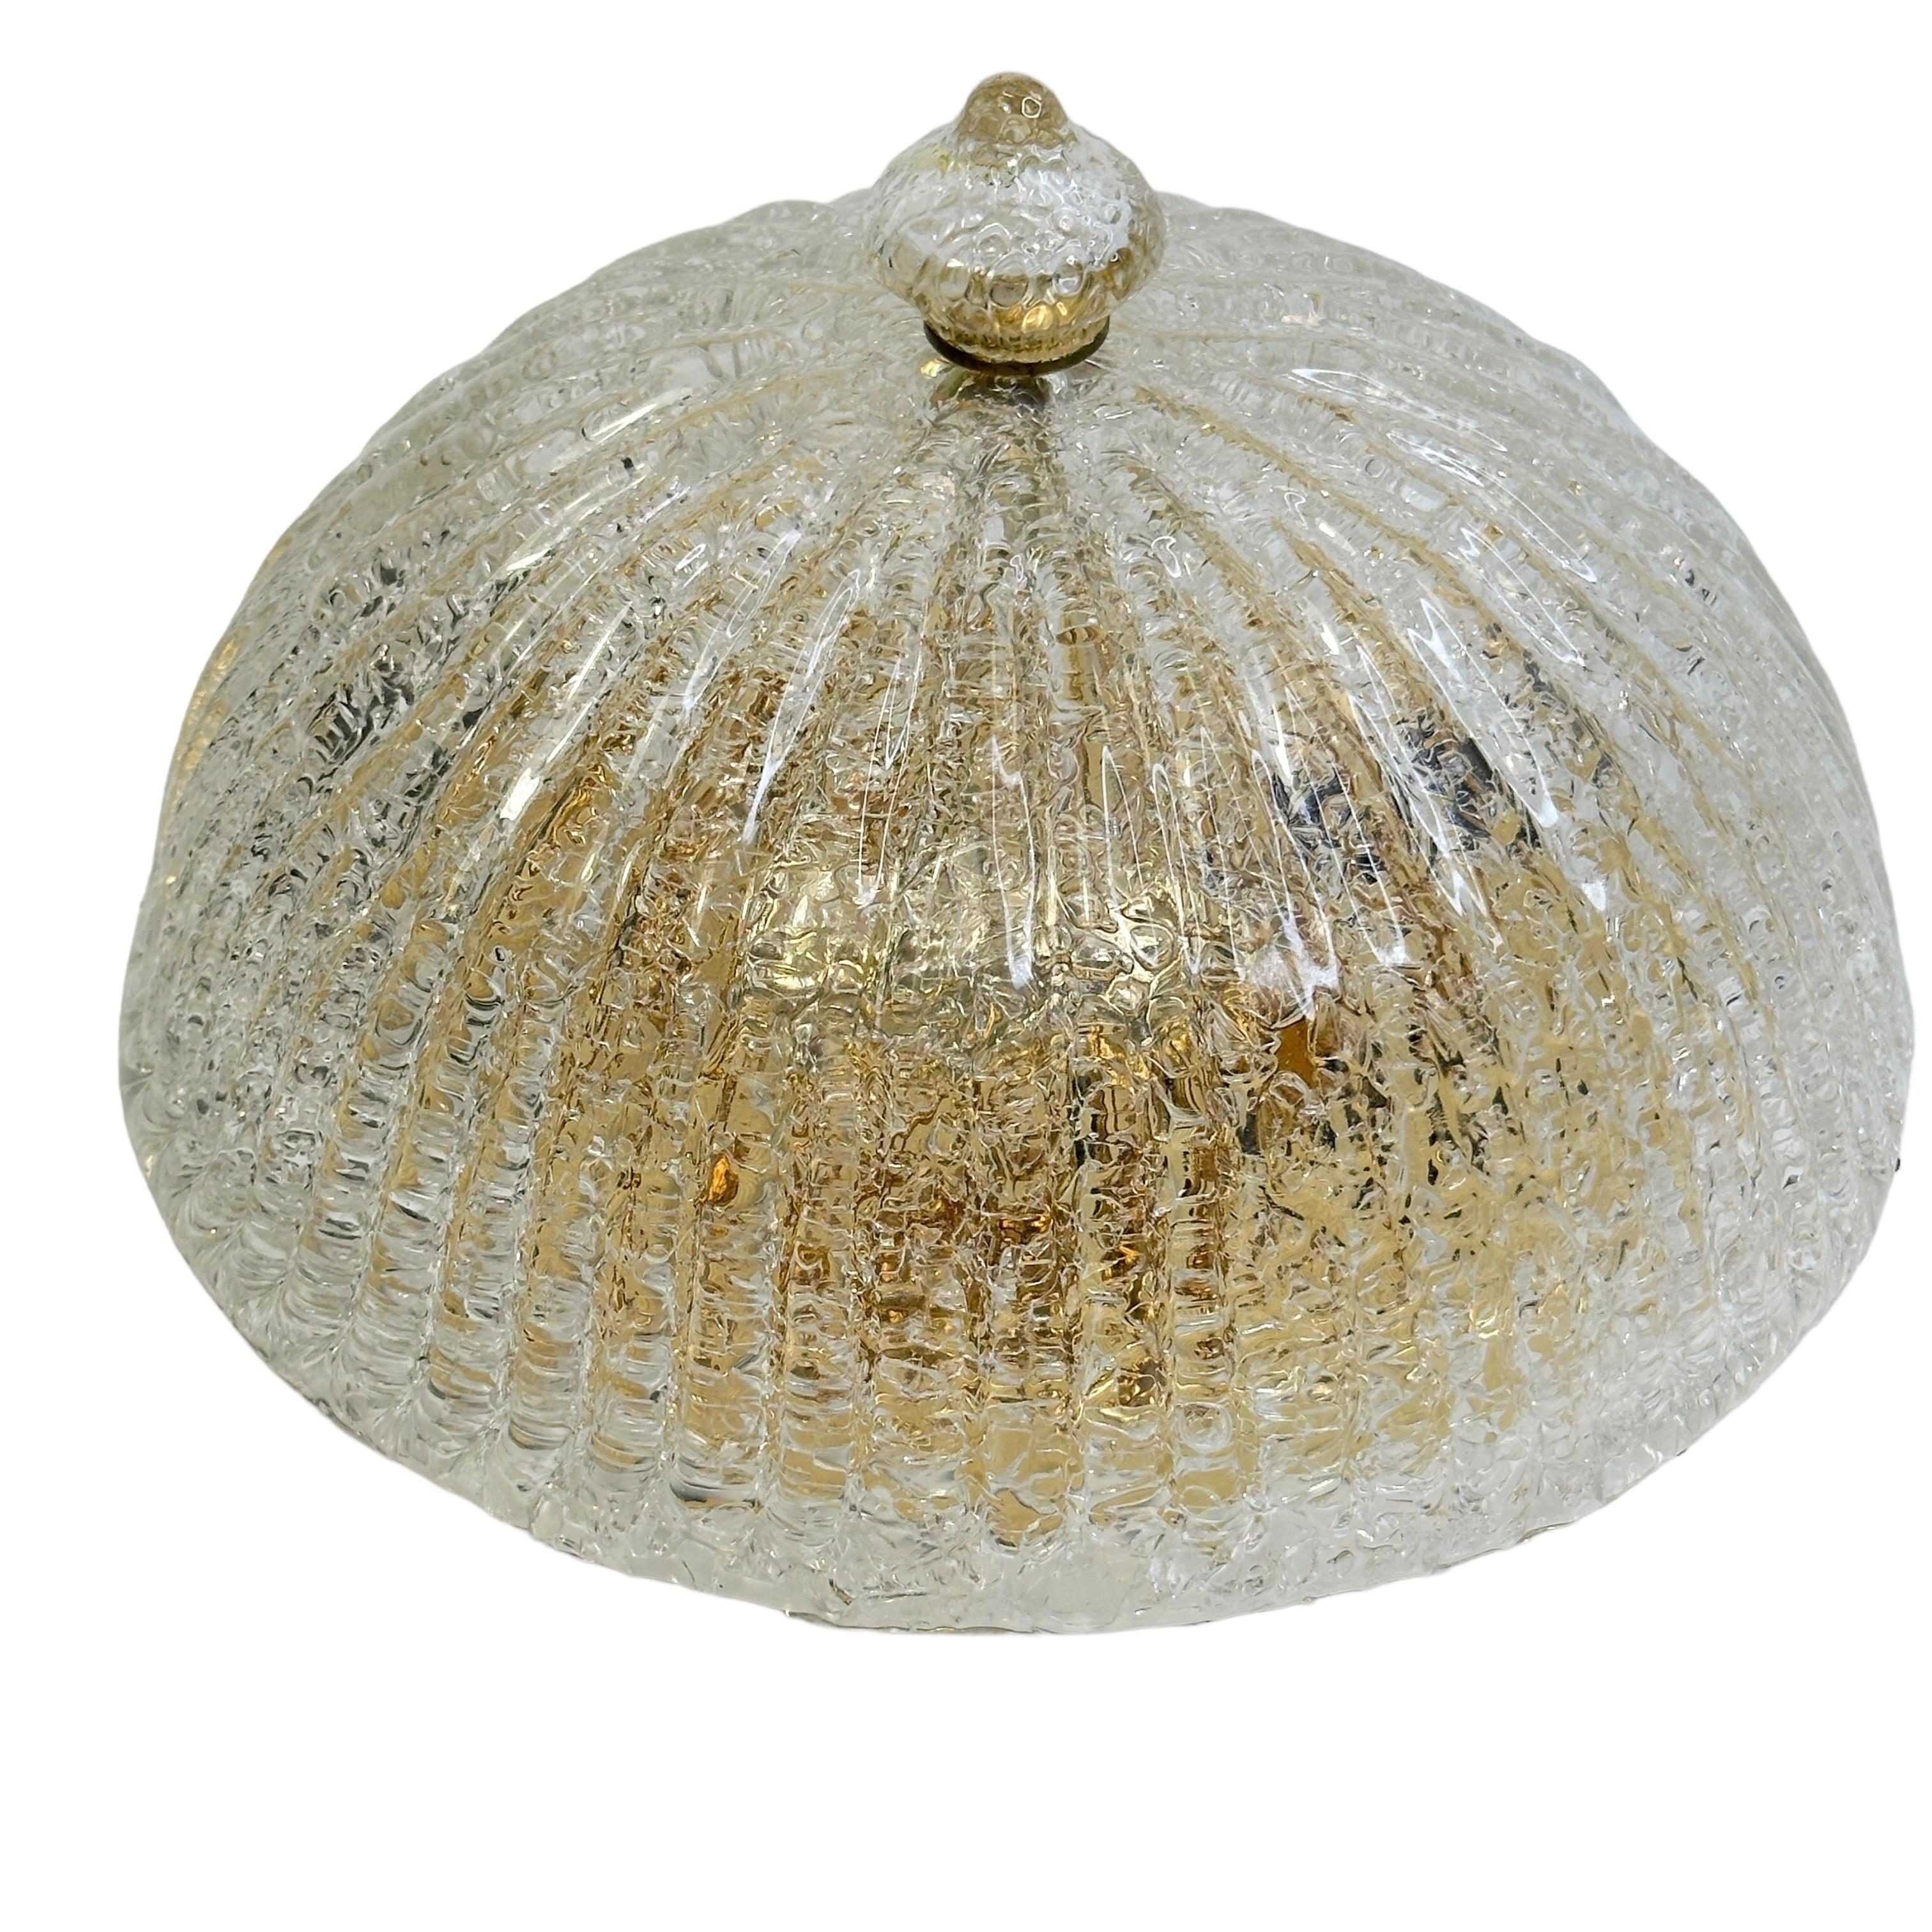 Dieser exquisite Kronleuchter wurde in Murano, Italien, um 1980 hergestellt. Der Schirm aus mundgeblasenem Murano-Glas mit Metallbeschlägen ist subtil konkav und kanalisiert. Eine schöne handgefertigte Glaszwiebelkuppel auf der Oberseite als Teil